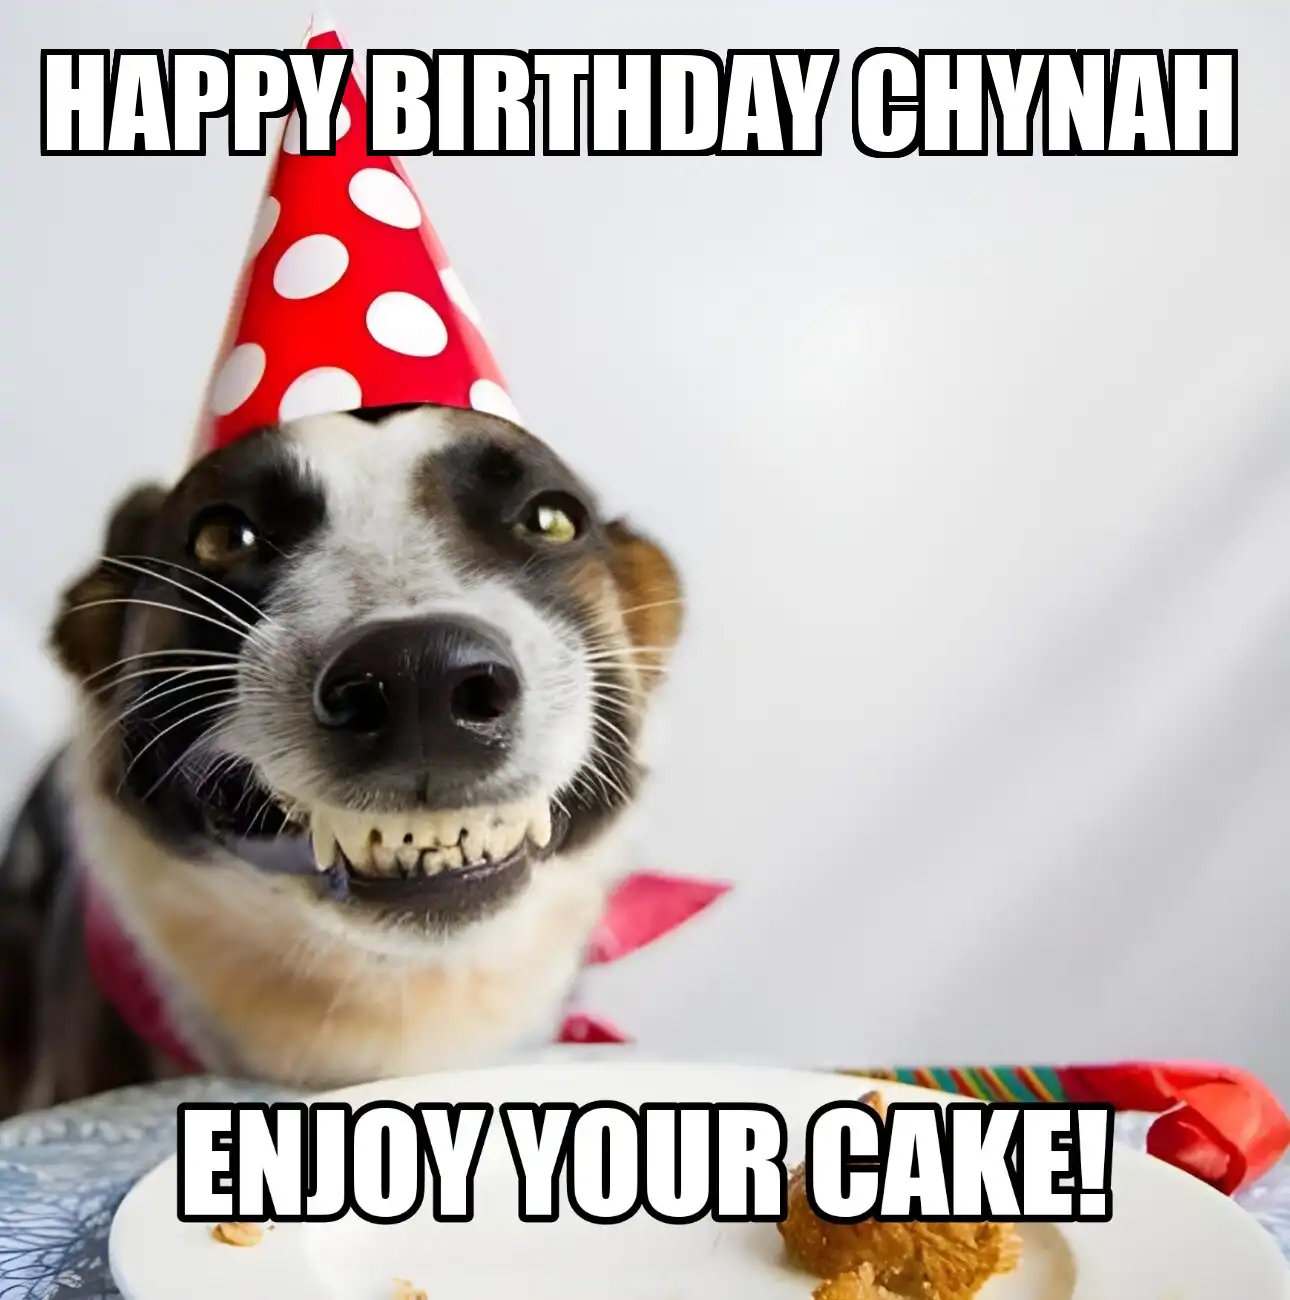 Happy Birthday Chynah Enjoy Your Cake Dog Meme